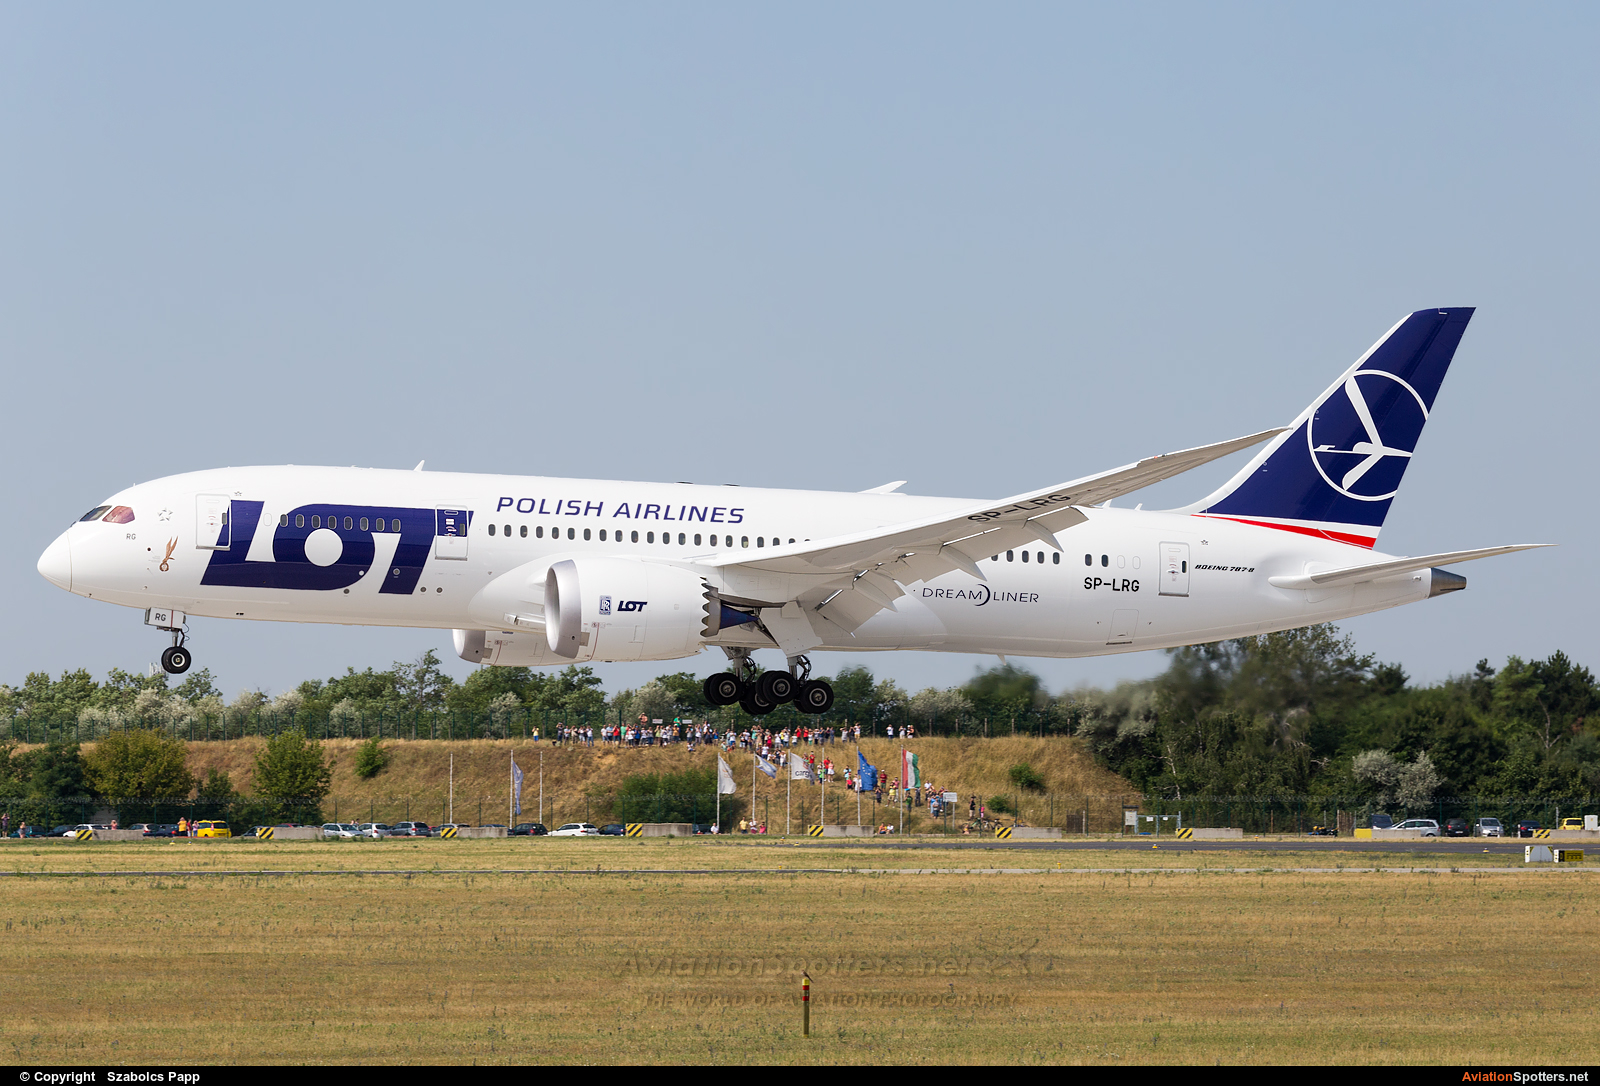 LOT - Polish Airlines  -  787-8 Dreamliner  (SP-LRG) By Szabolcs Papp (mr.szabi)